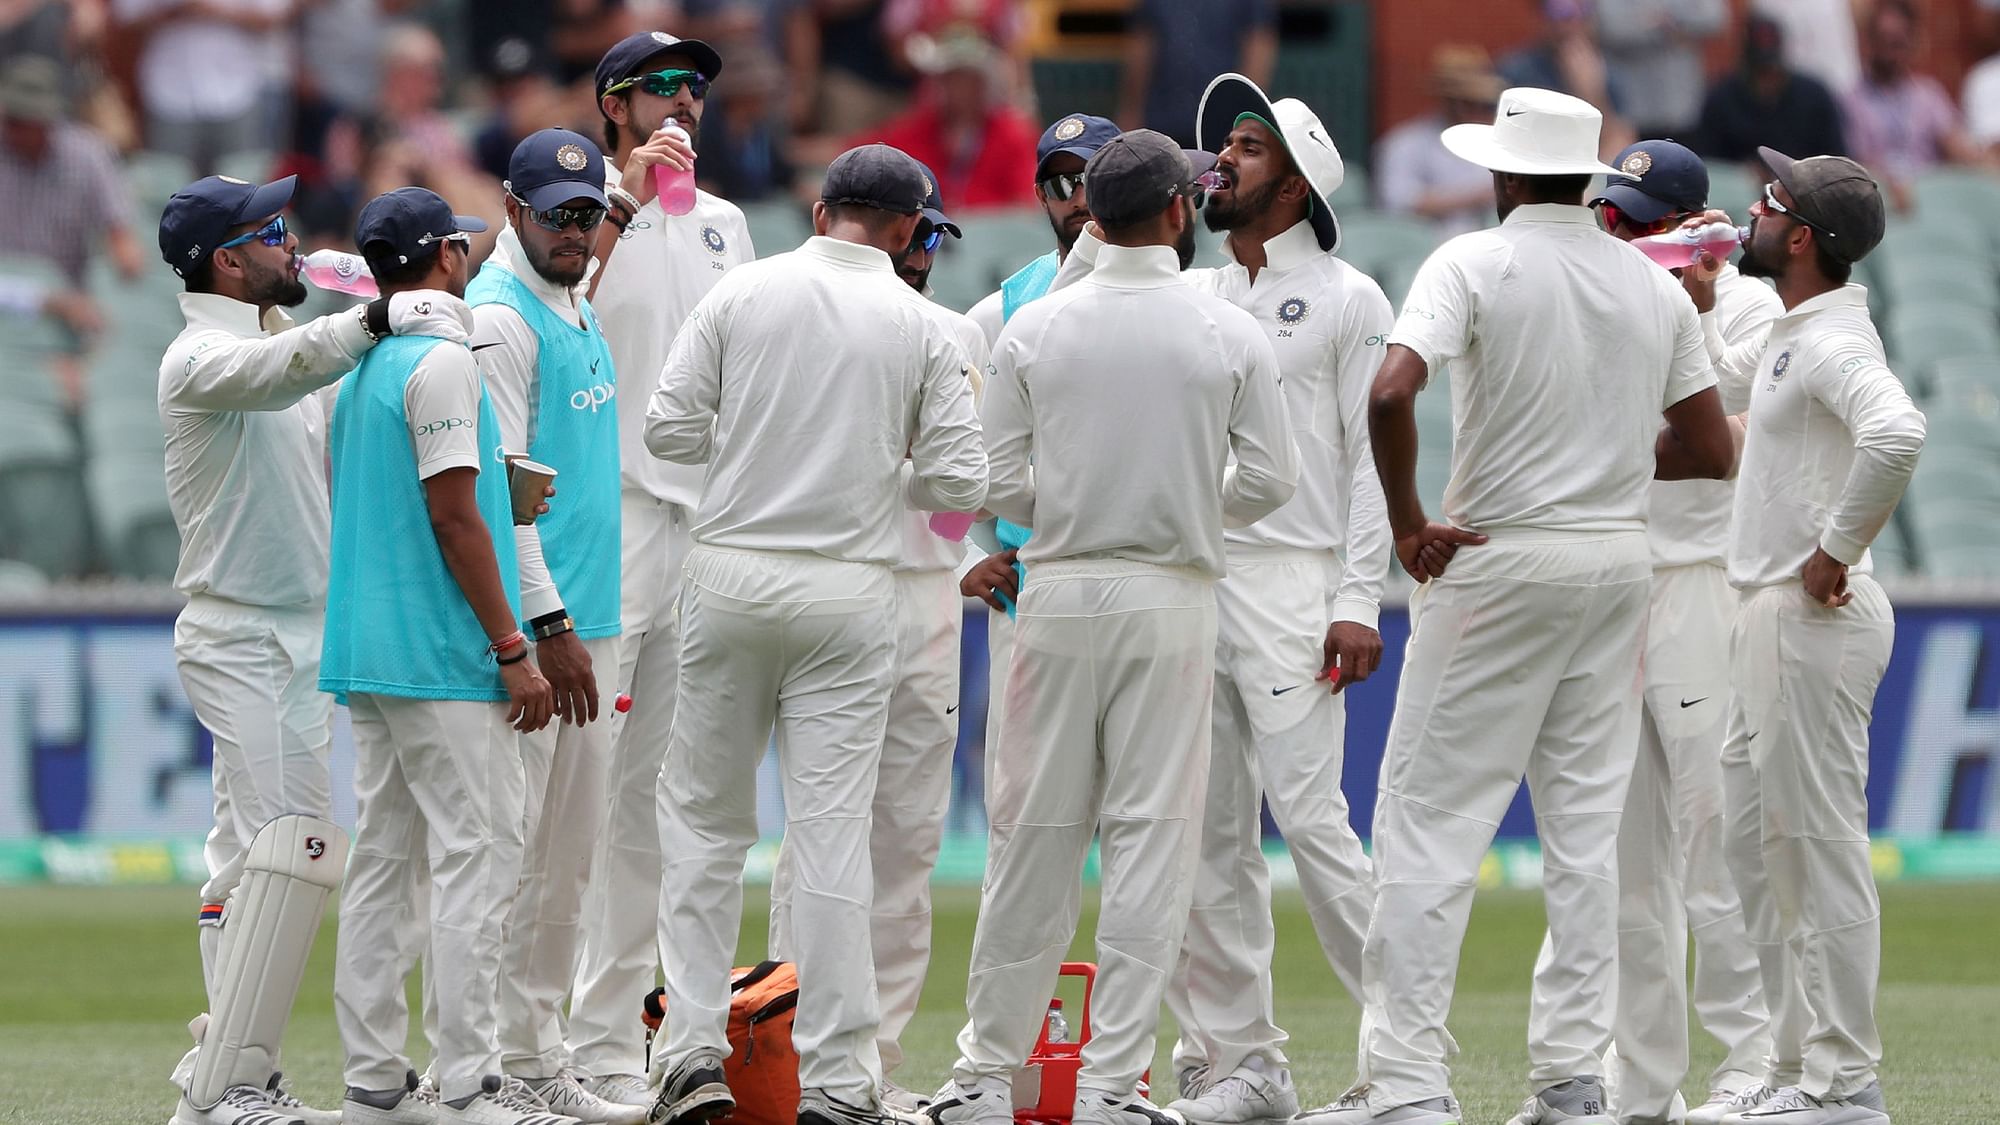 एडिलेड टेस्ट में टीम इंडिया के लिए तीसरे दिन का पहले सेशन बहुत जरूरी है